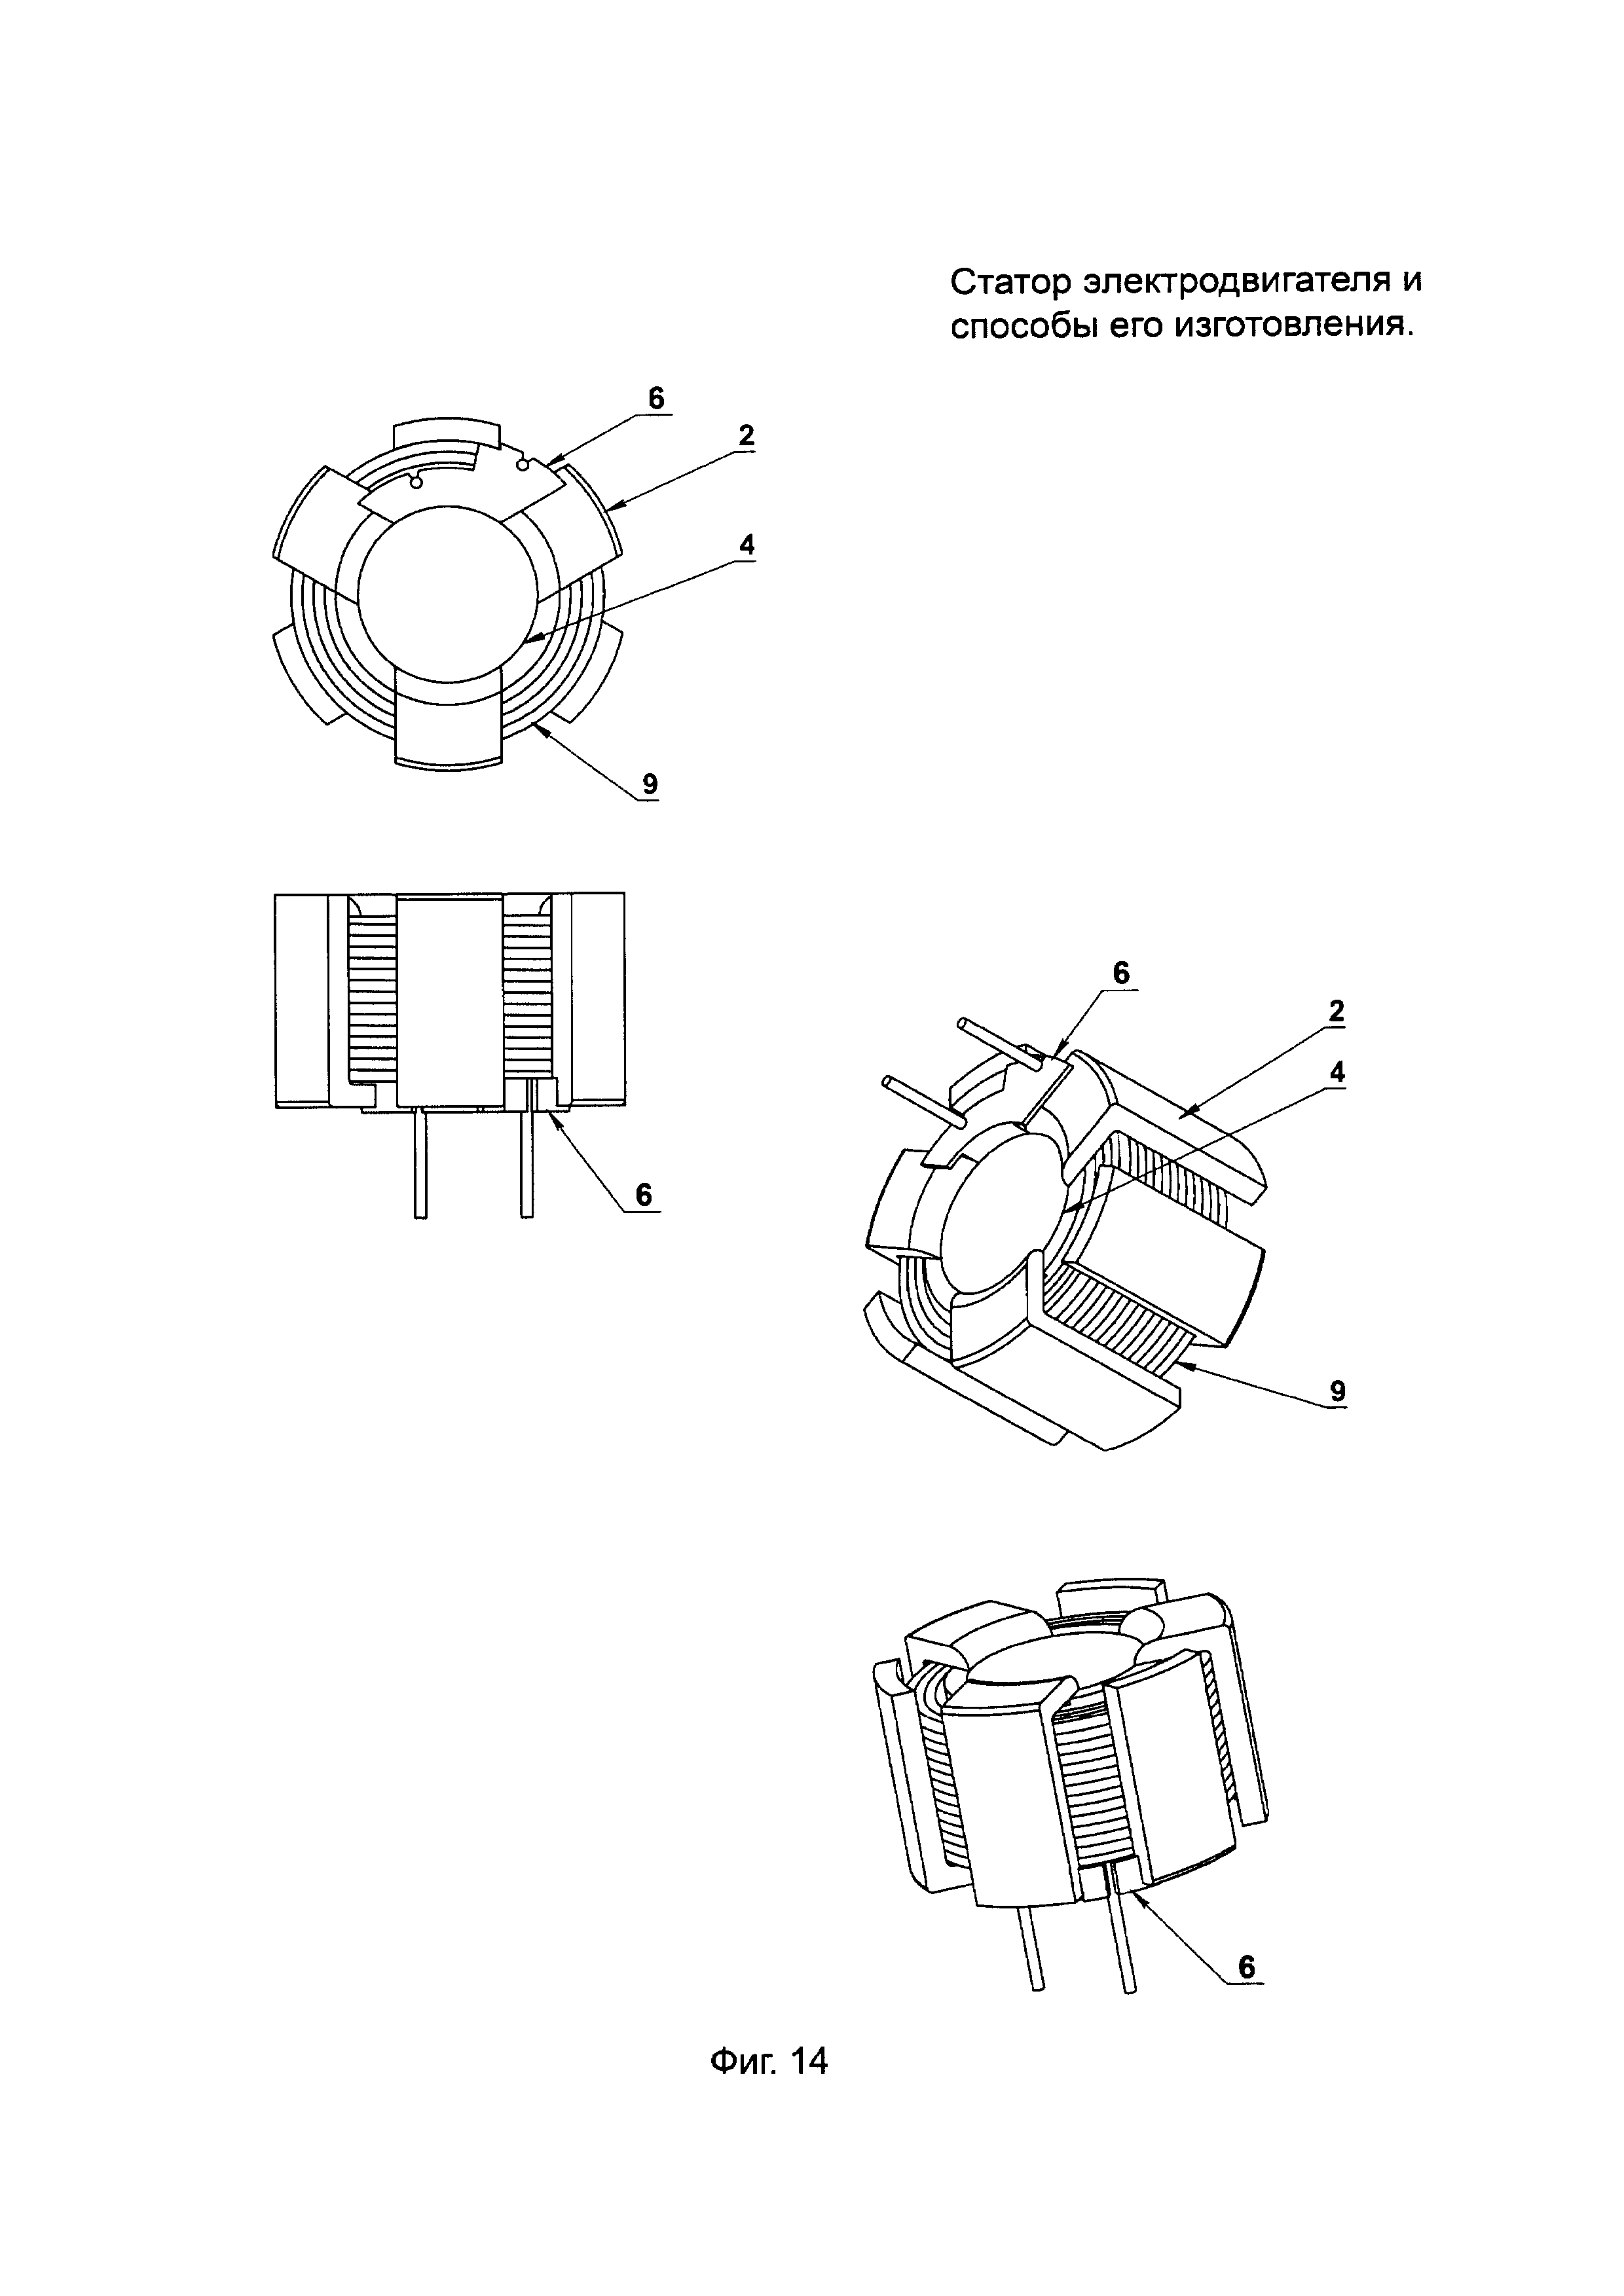 Статор электродвигателя и способы его изготовления